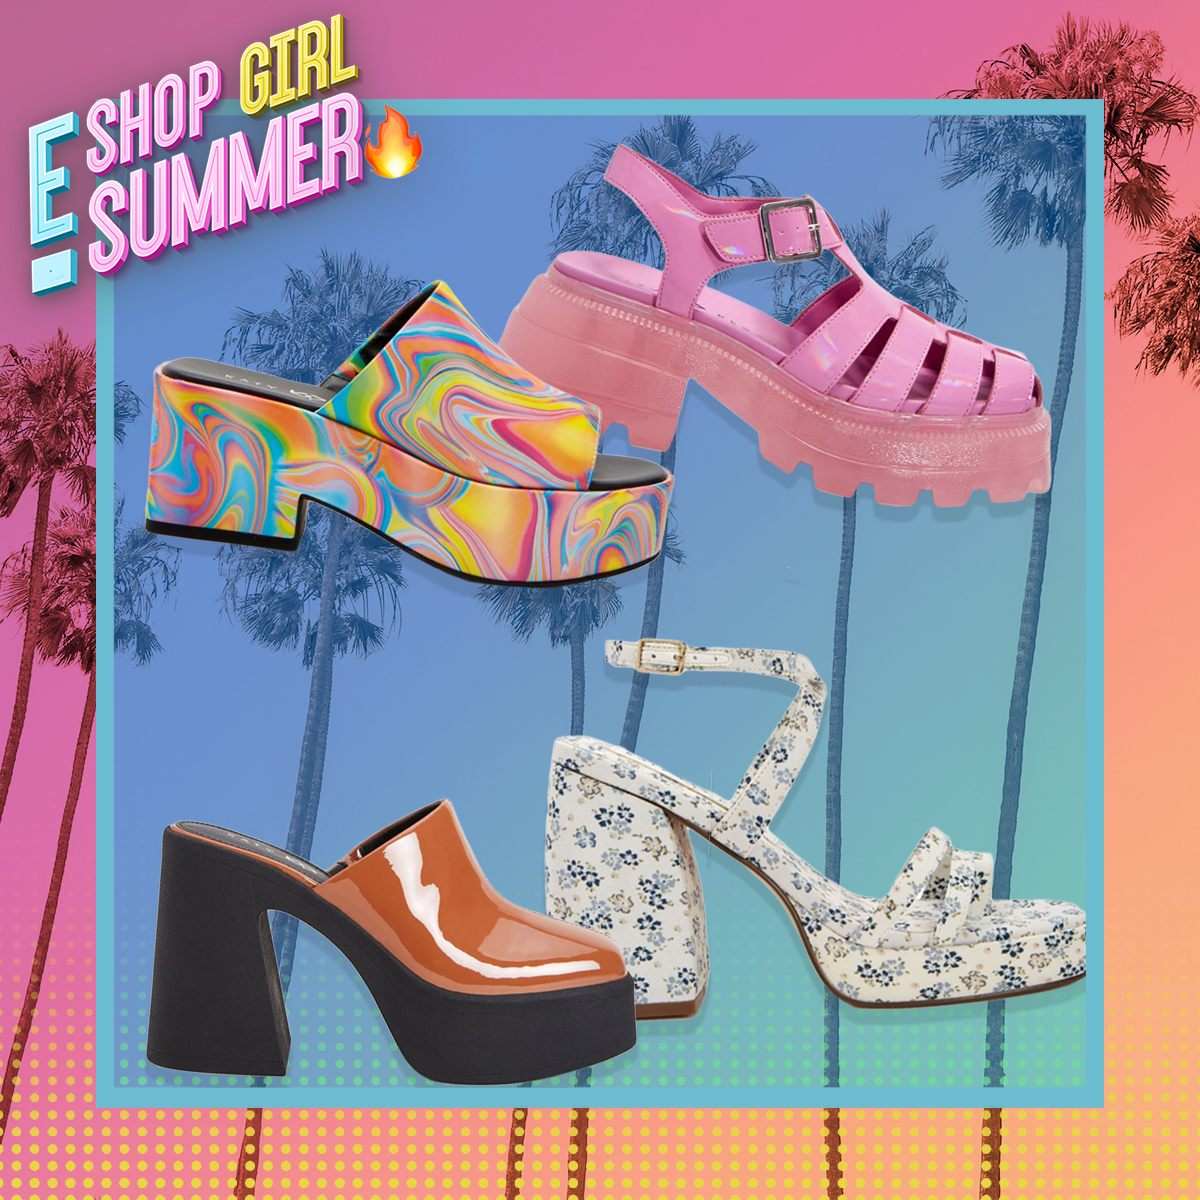 Die Schuhe der Katy Perry-Kollektion, die jedes Sommeroutfit vervollständigen